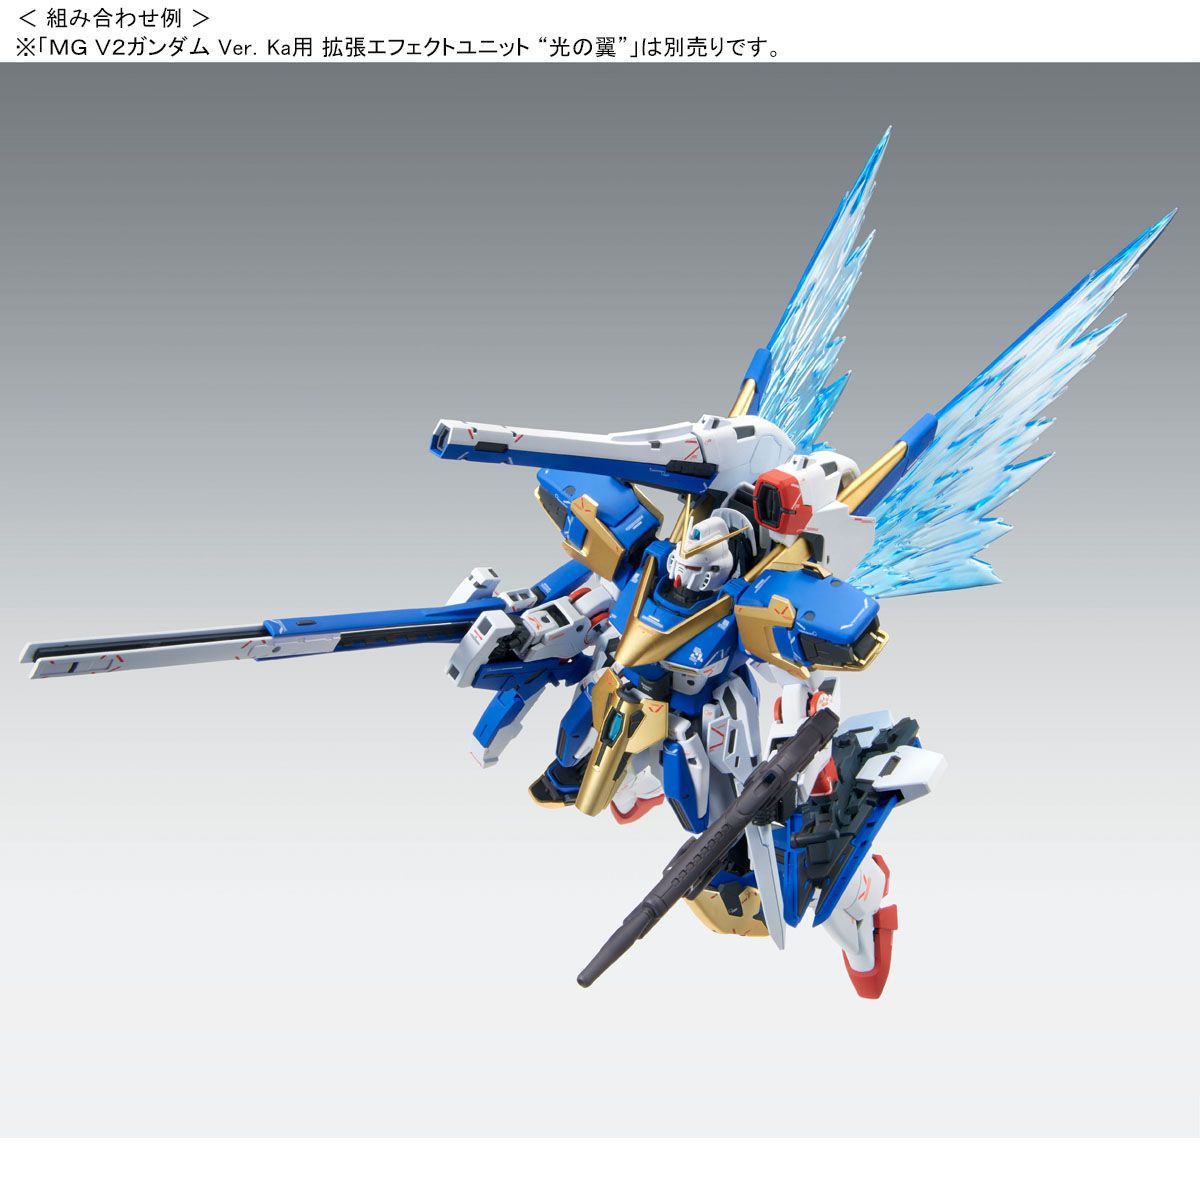 MG - LM314V23/24 V2 Assault-Buster Gundam Ver.Ka